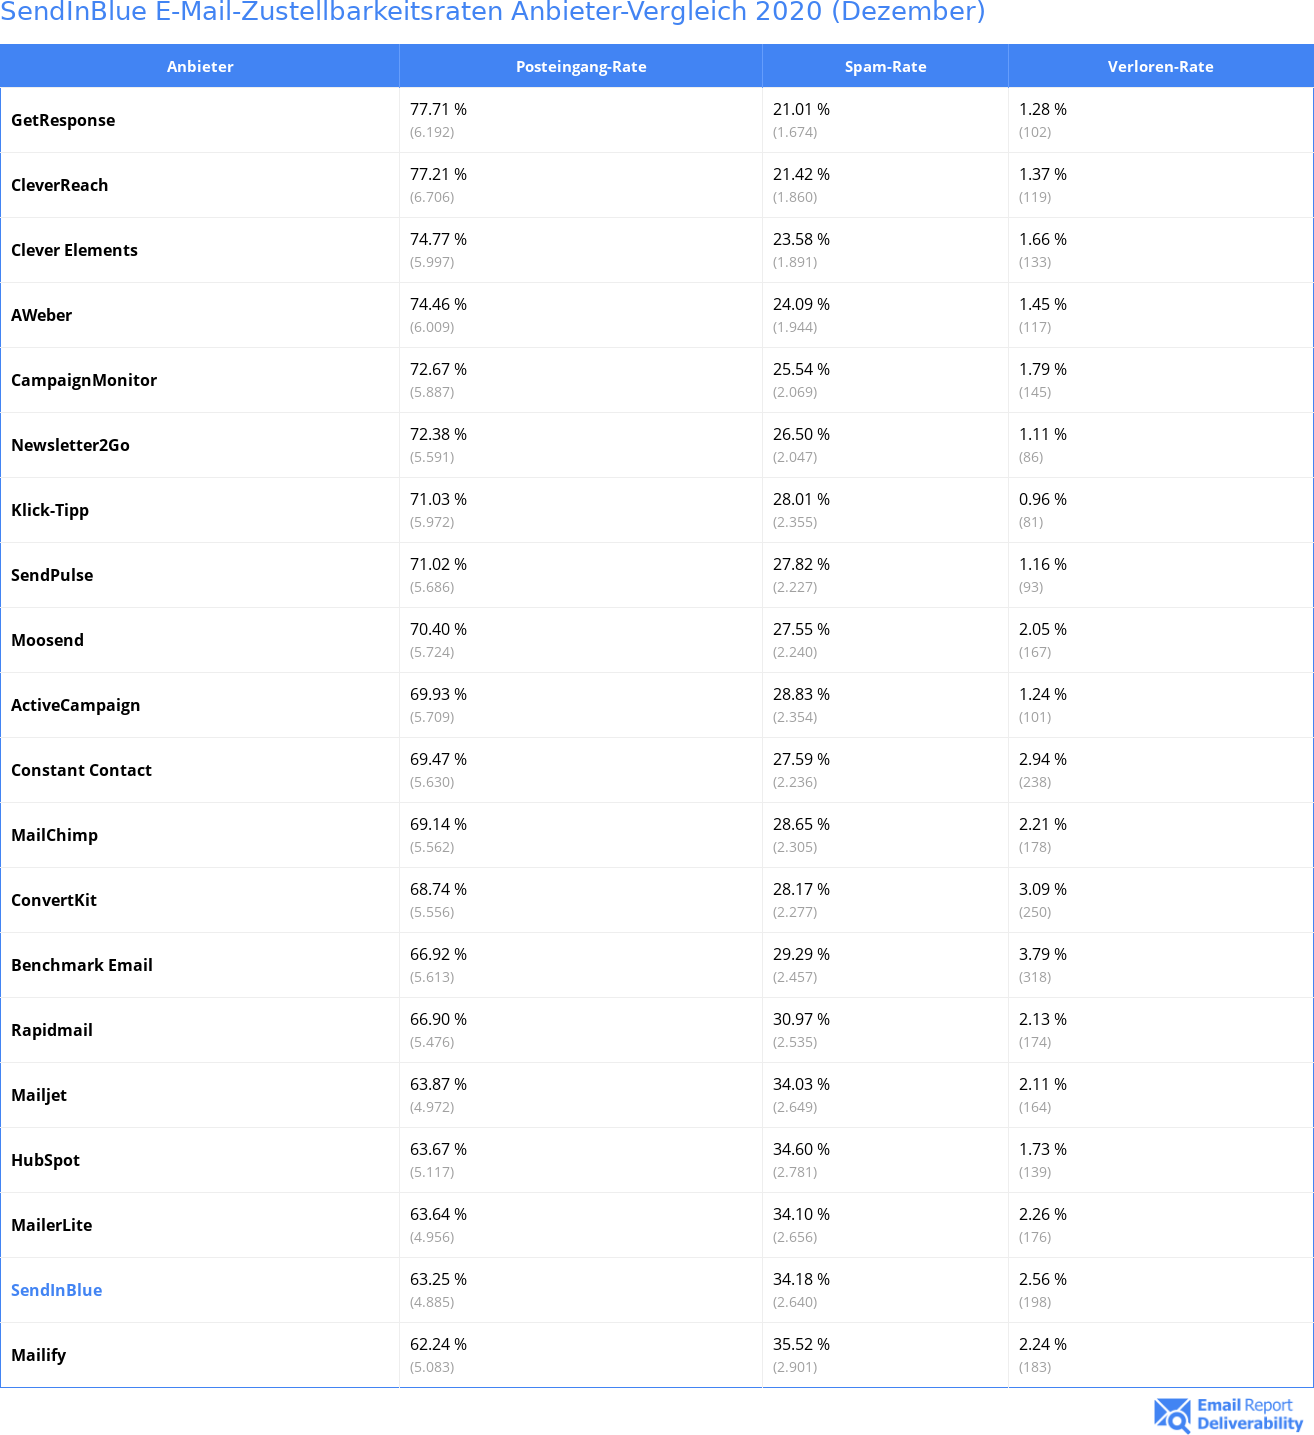 SendInBlue E-Mail-Zustellbarkeitsraten Anbieter-Vergleich 2020 (Dezember)